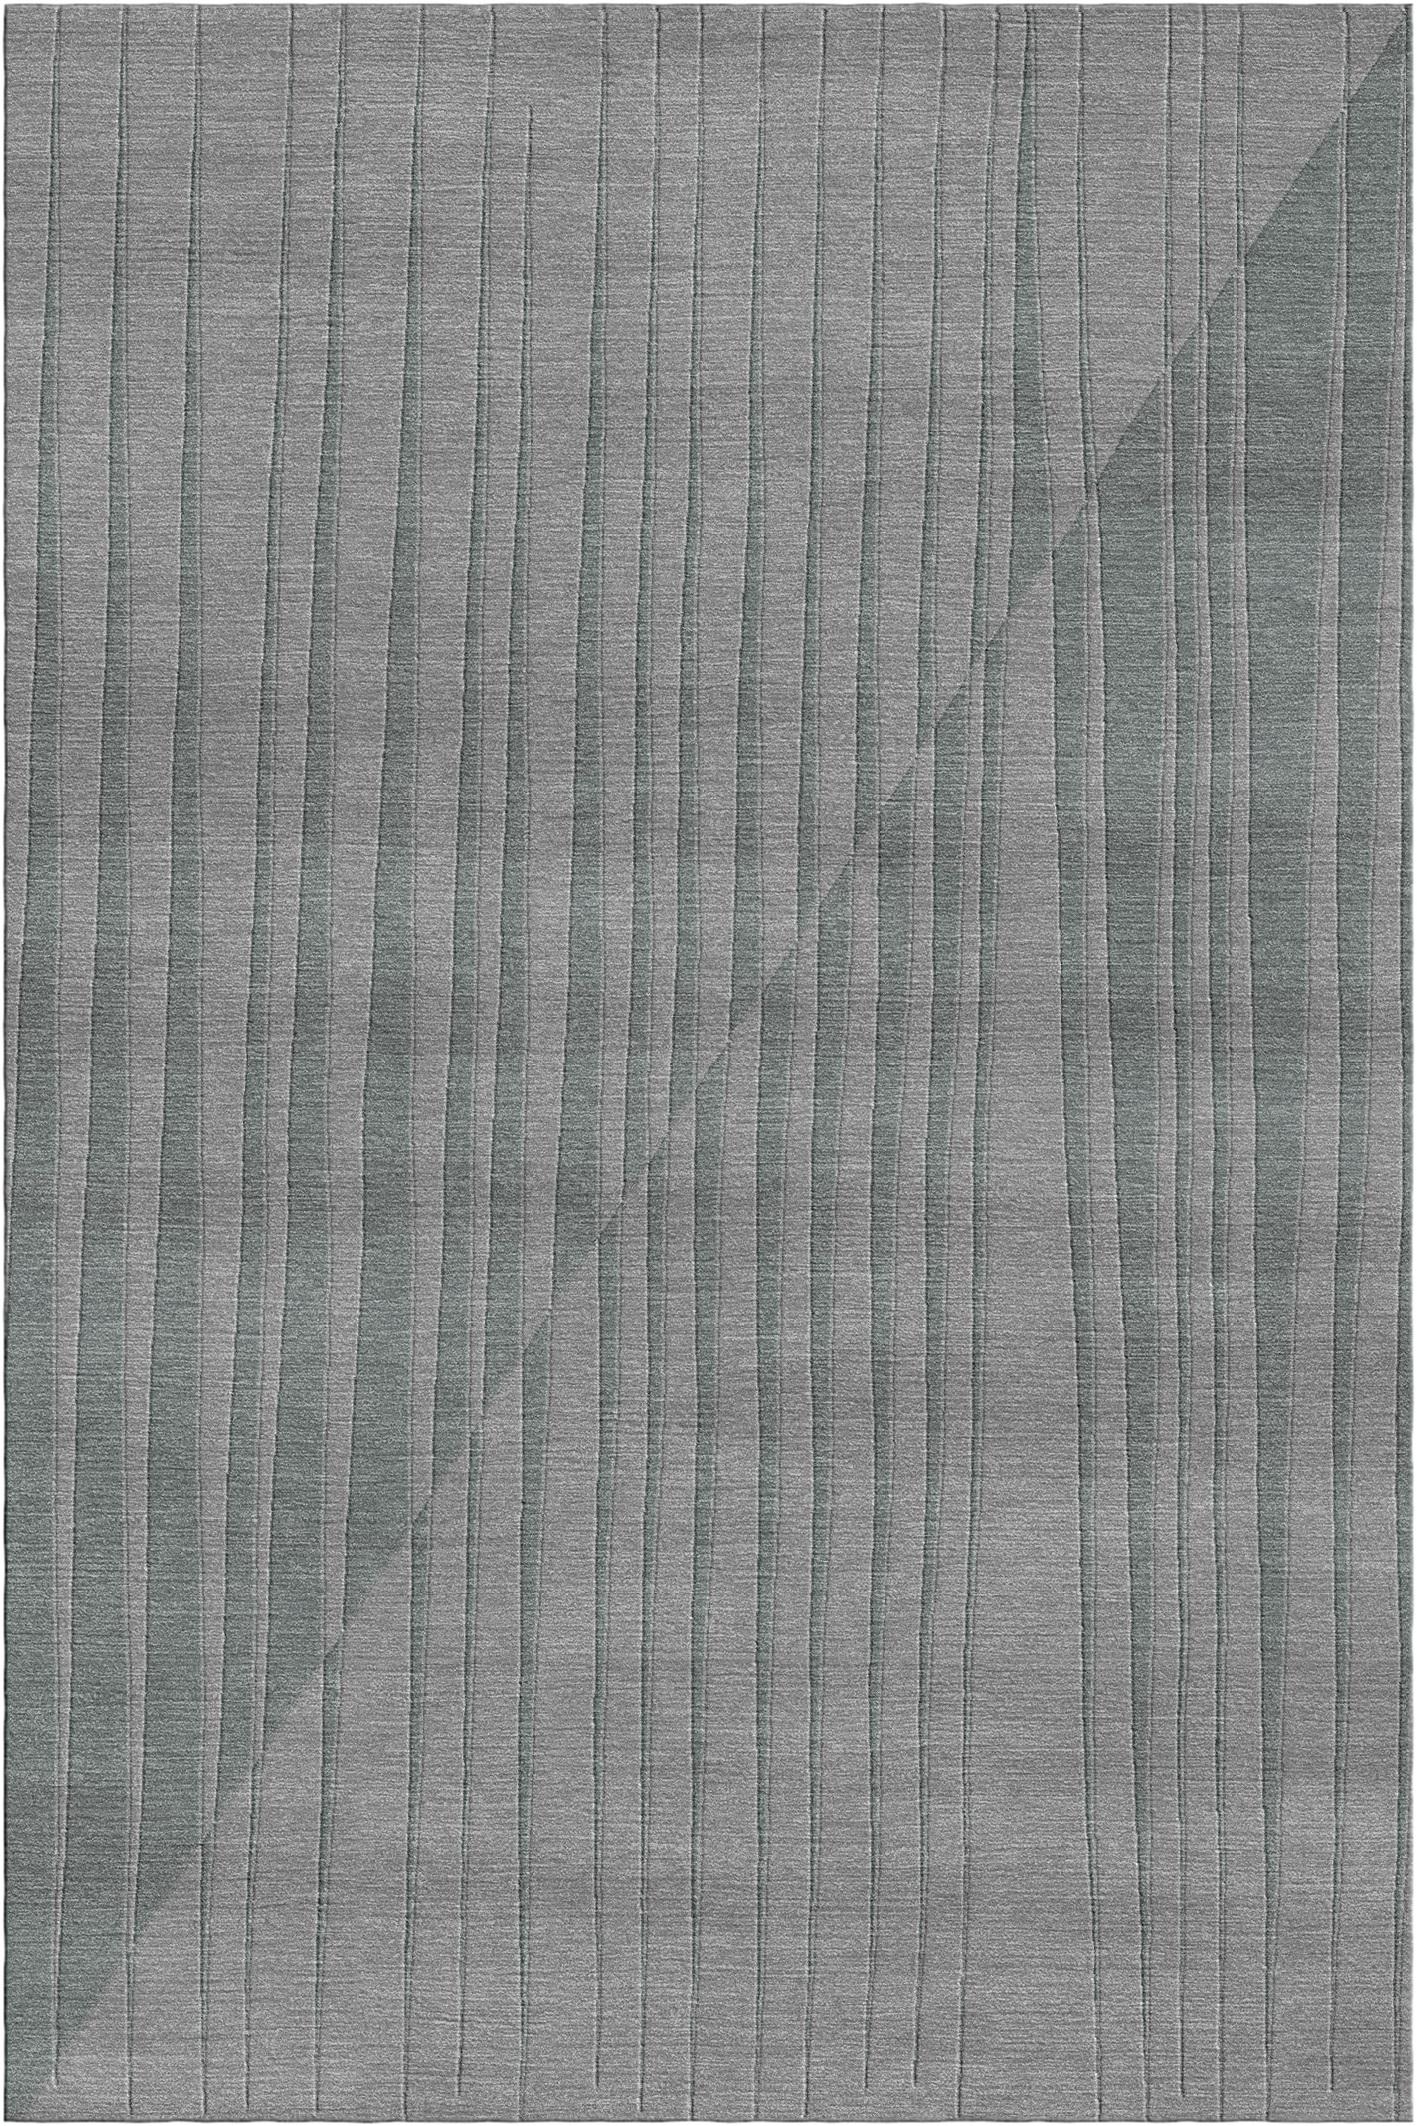 Spieghe teppich III von Giulio Brambilla
Abmessungen: D 300 x B 200 x H 1,5 cm
MATERIALIEN: NZ-Wolle, Bambusseide
Erhältlich in anderen Farben.

Eine faszinierende Kombination aus Tradition und Innovation macht diesen Teppich zu einem Blickfang in